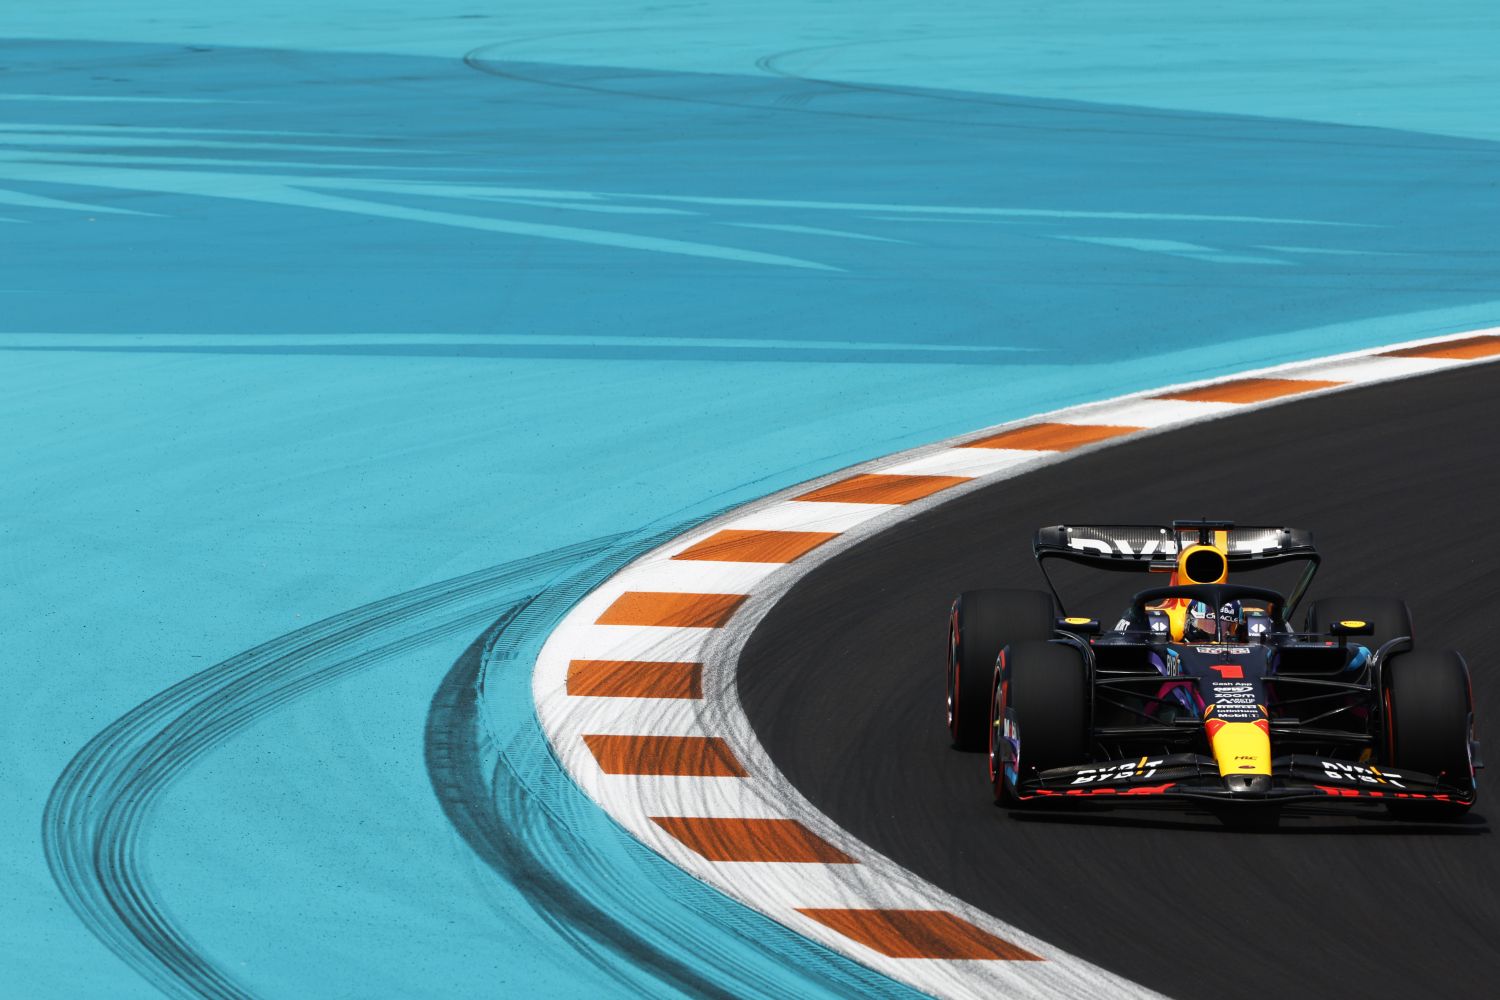 GP de Abu Dhabi: acompanhe o ao vivo do segundo treino da F1 na